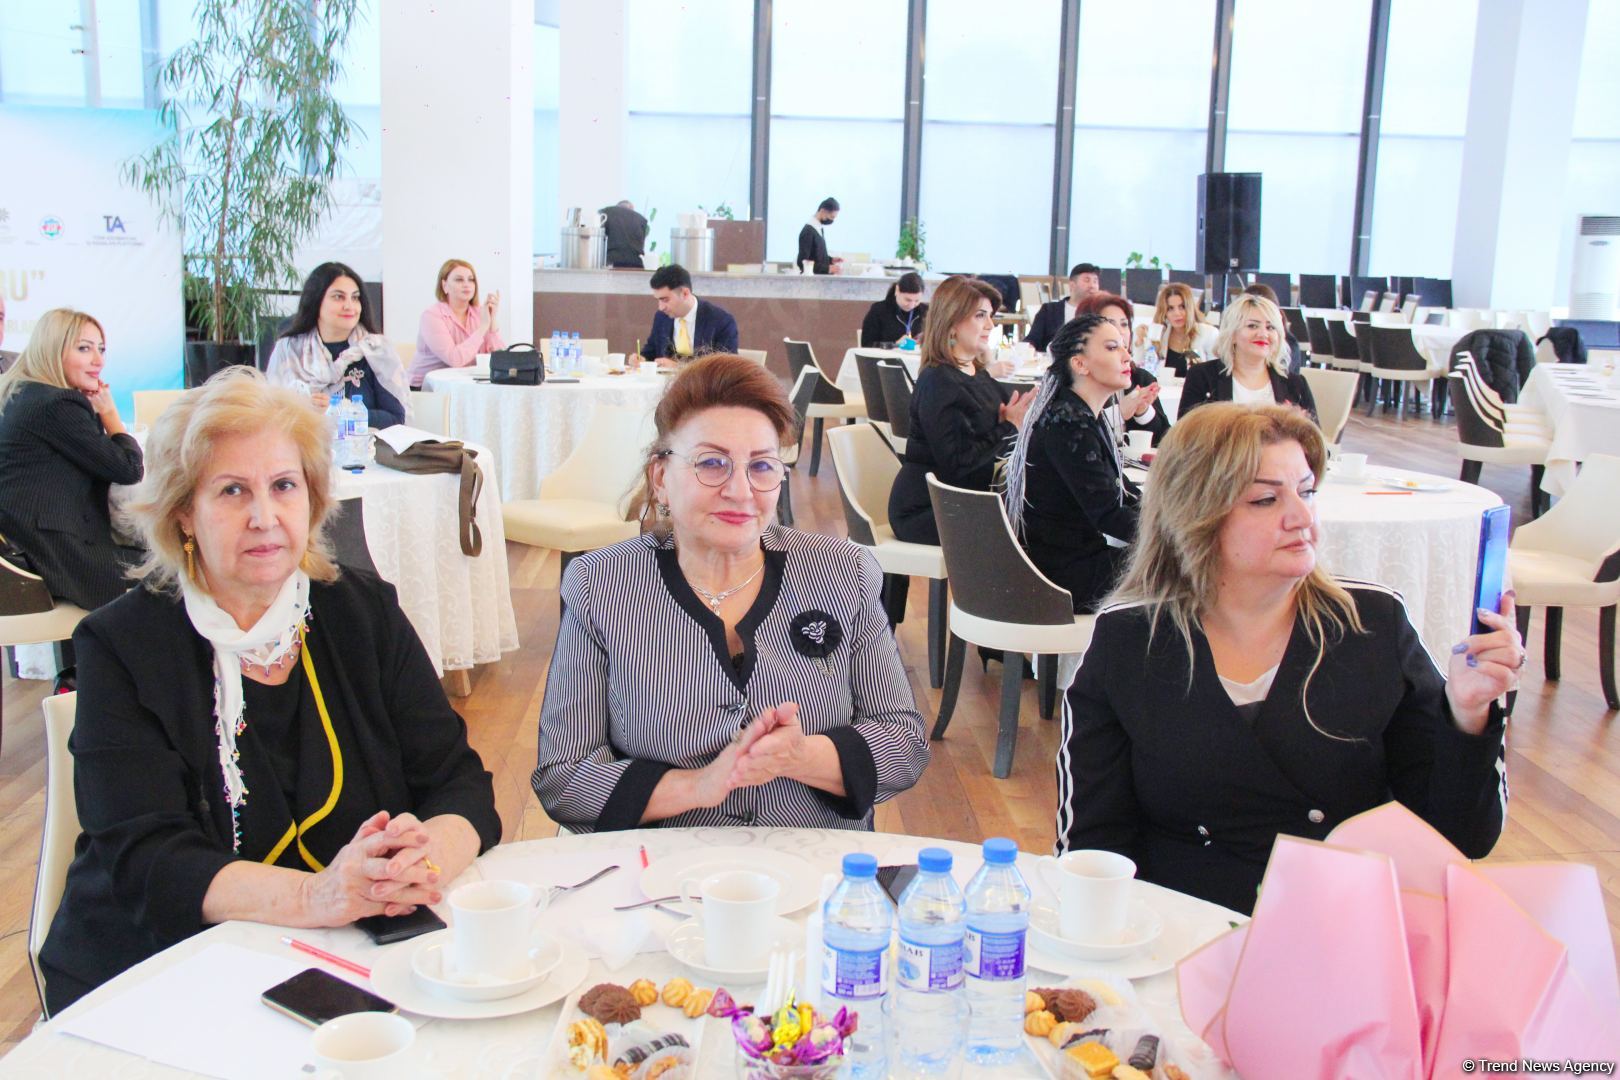 Женщины-предприниматели Азербайджана и Турции расширяют сотрудничество в рамках "Zəfərə doğru"  (ФОТО)